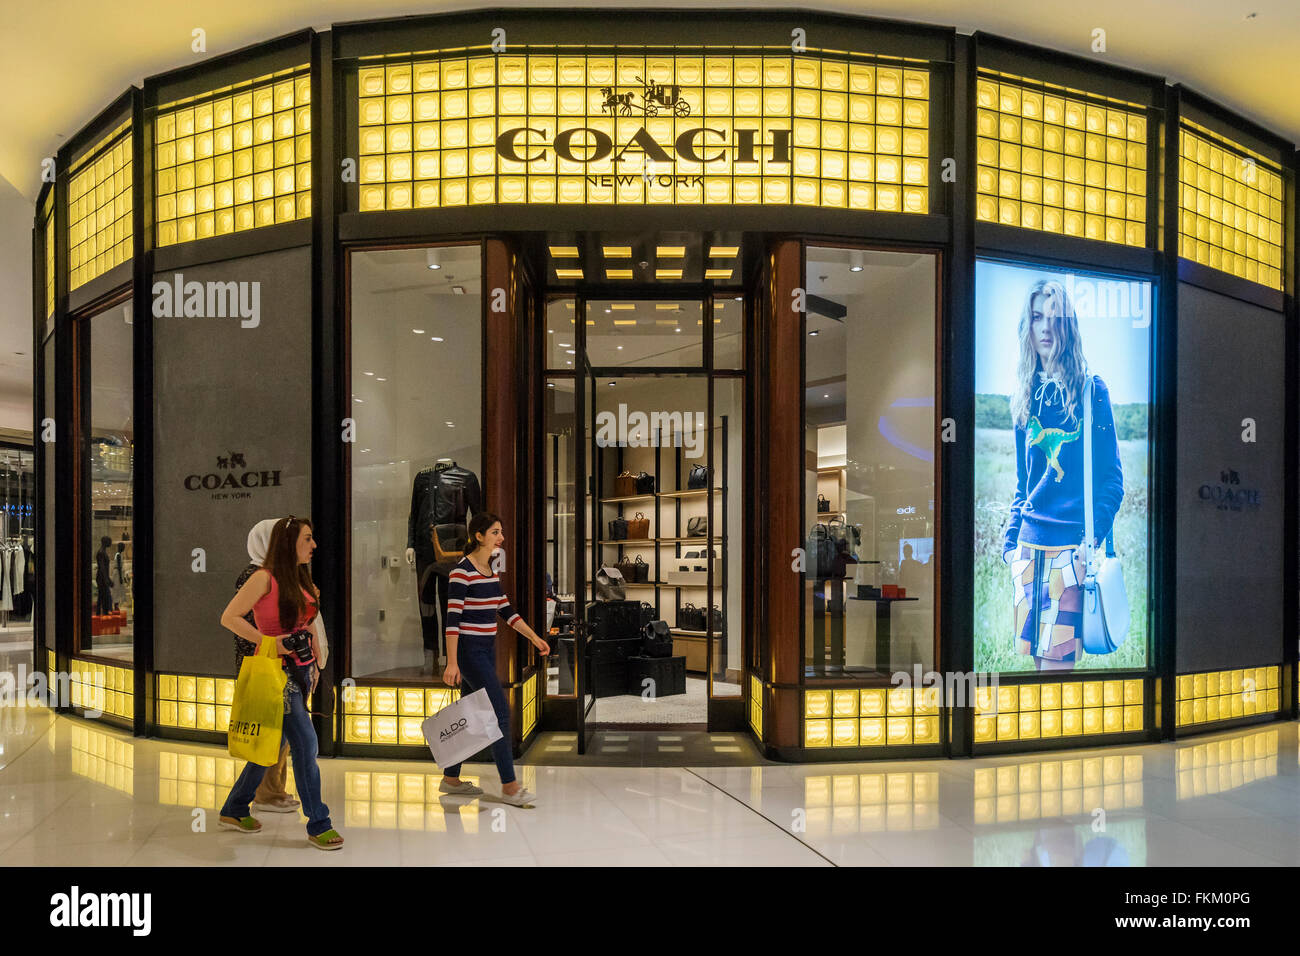 Trainer-Modegeschäft in Dubai Mall Dubai Vereinigte Arabische Emirate Stockfoto